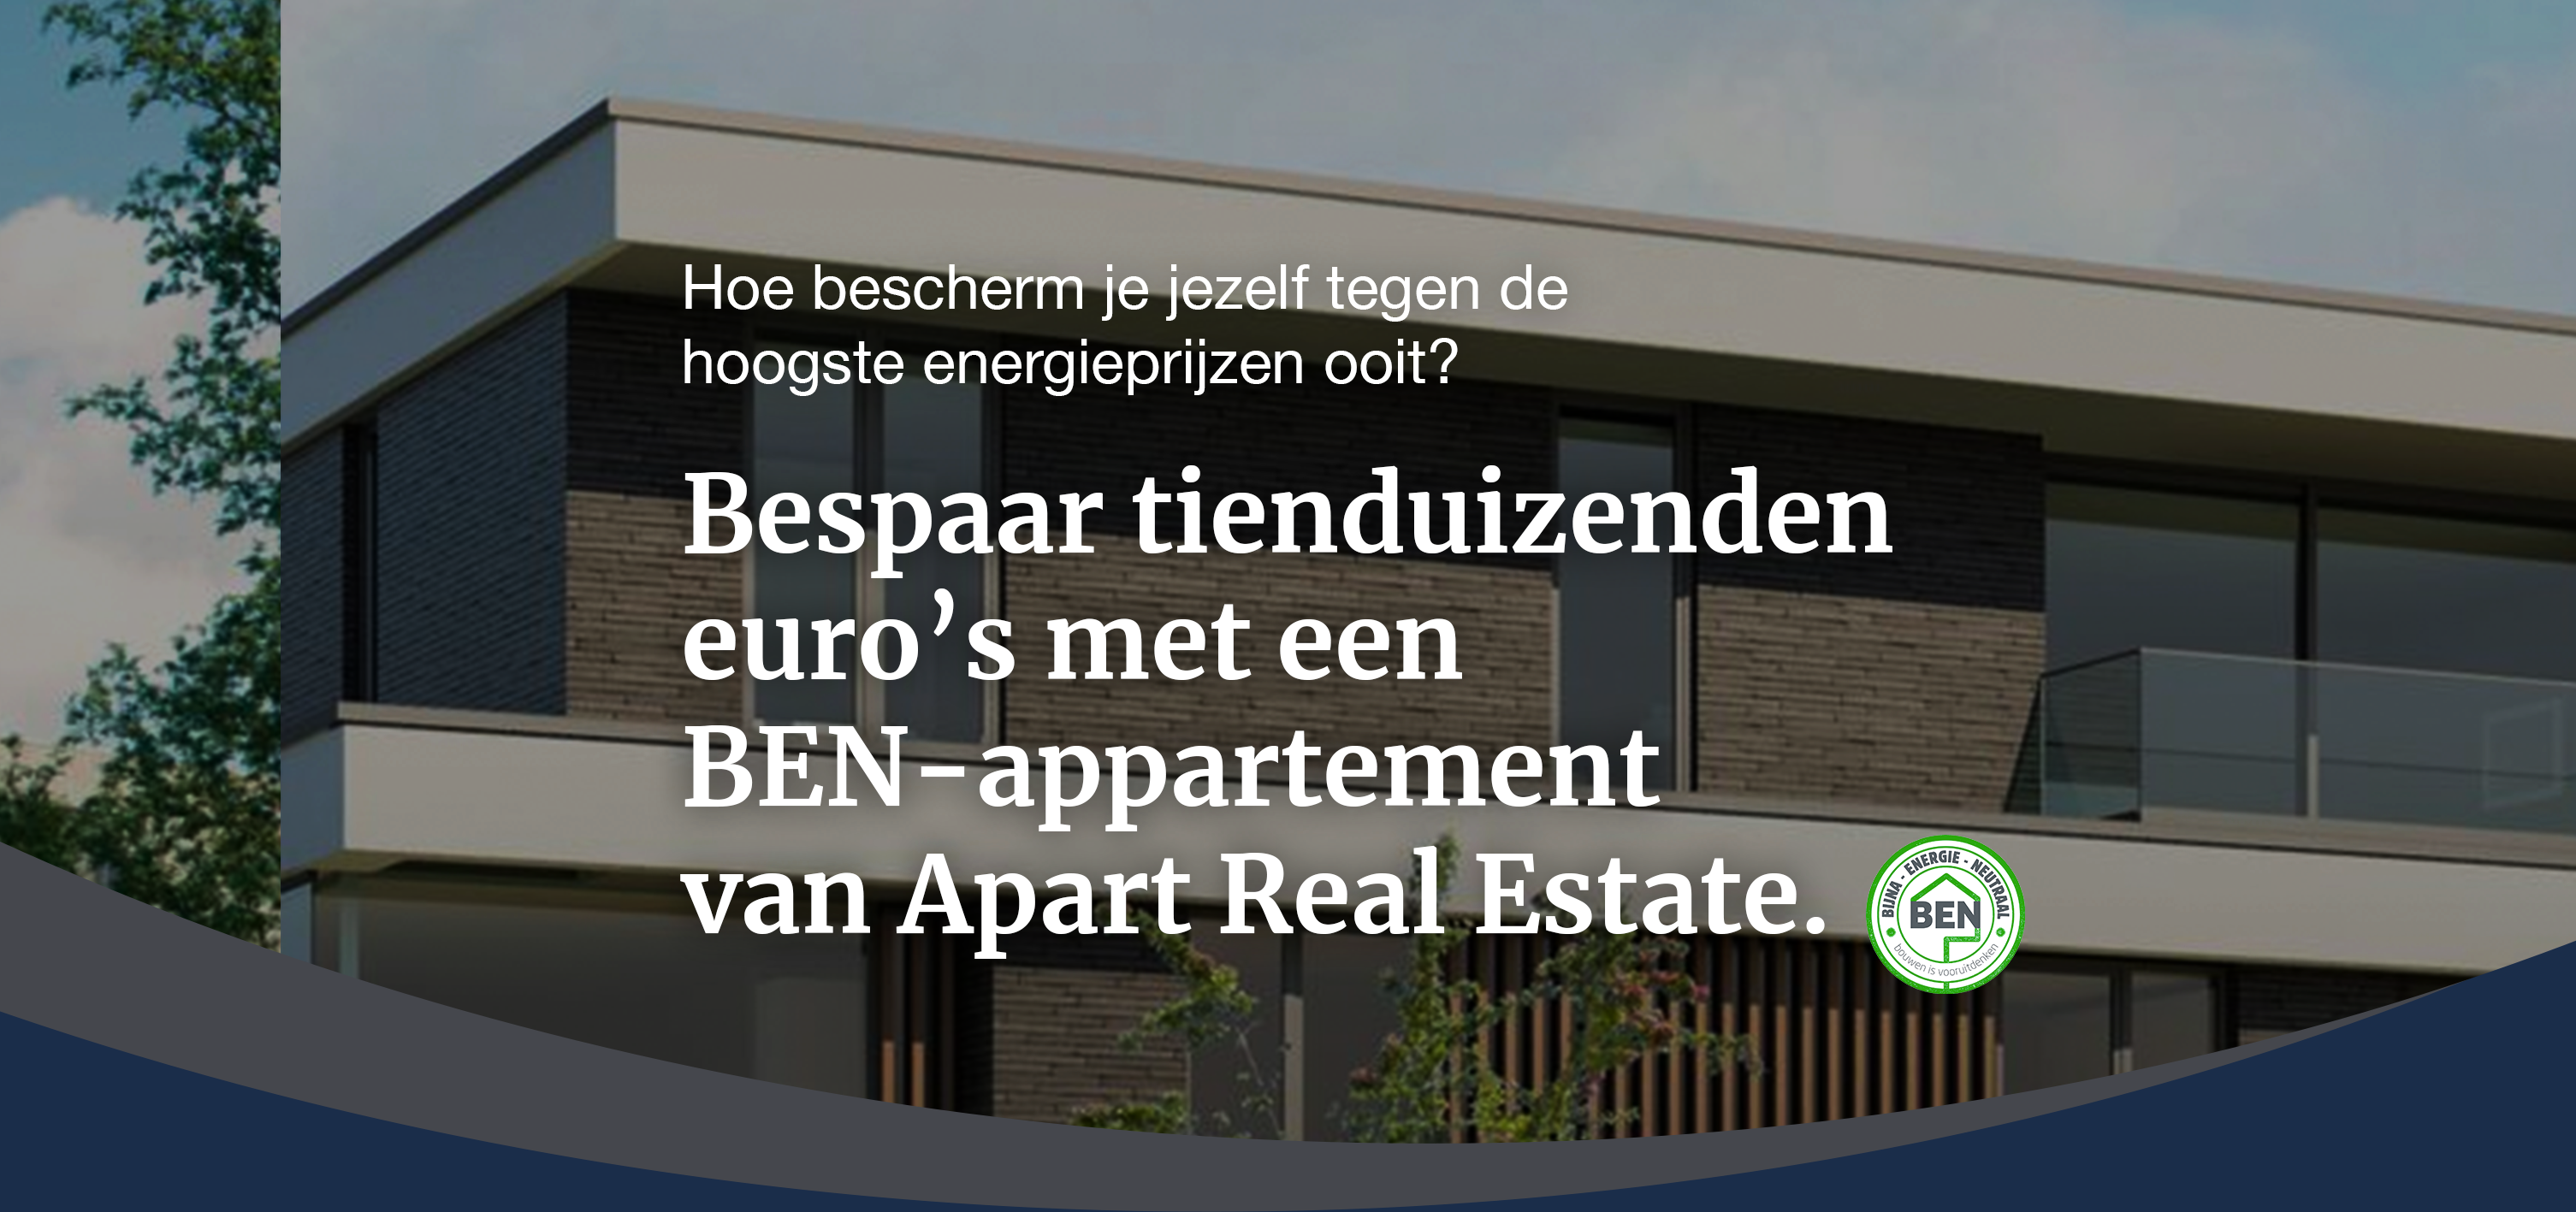 Hoe bescherm je jezelf tegen de hoogste energieprijzen ooit? Simpel. Bespaar duizenden euro’s met een BEN-appartement van Apart Real Estate.